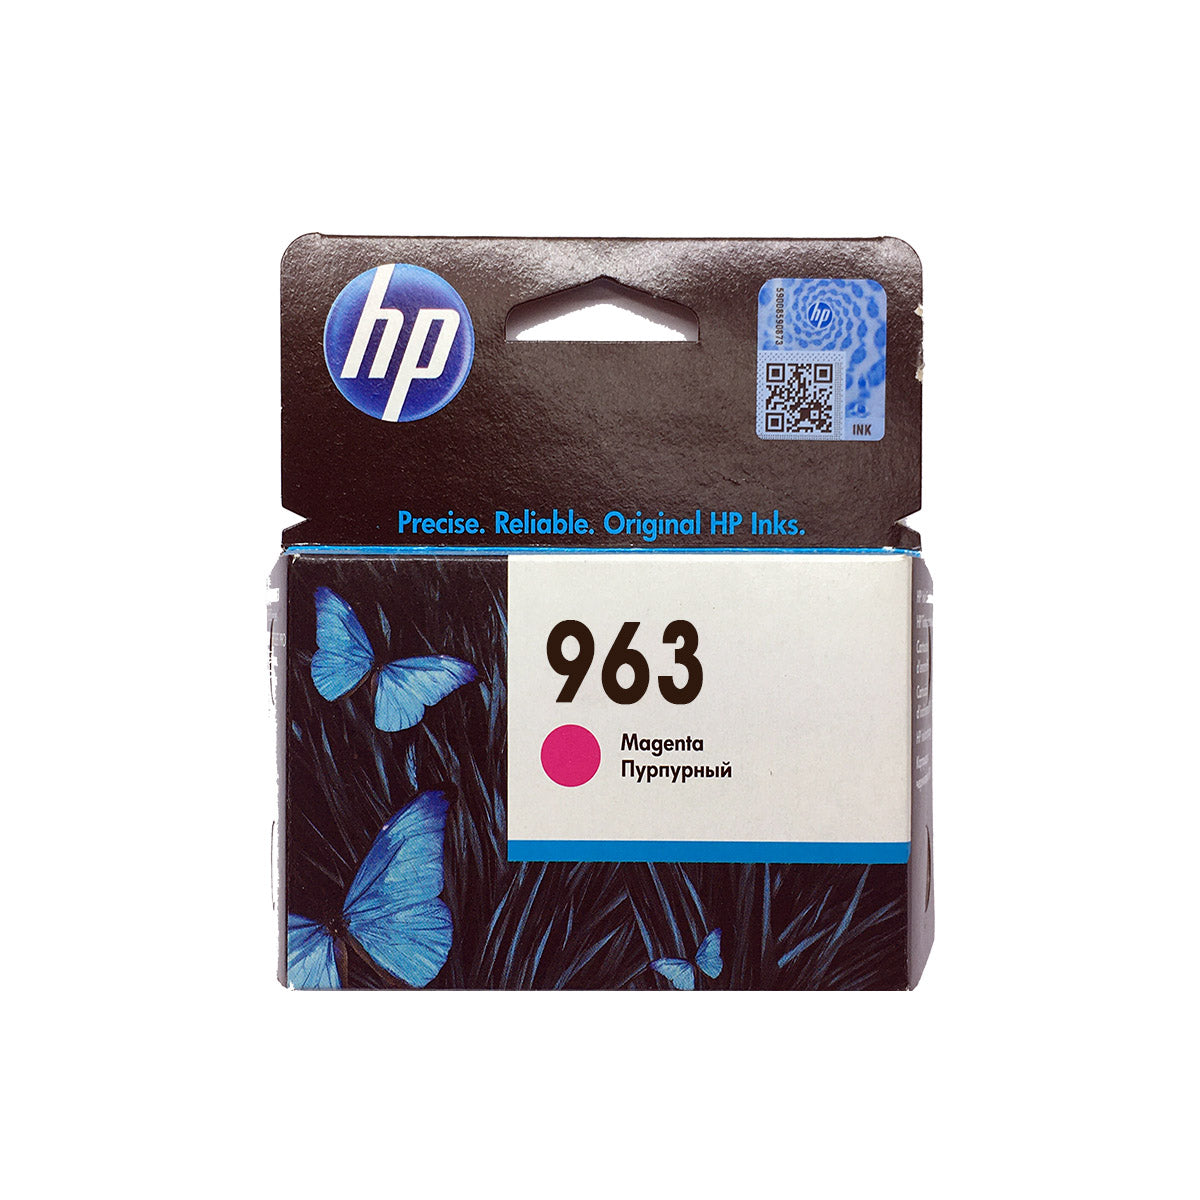 Shop HP 963 Original Ink Cartridge Magenta Color online in Abu Dhabi, UAE